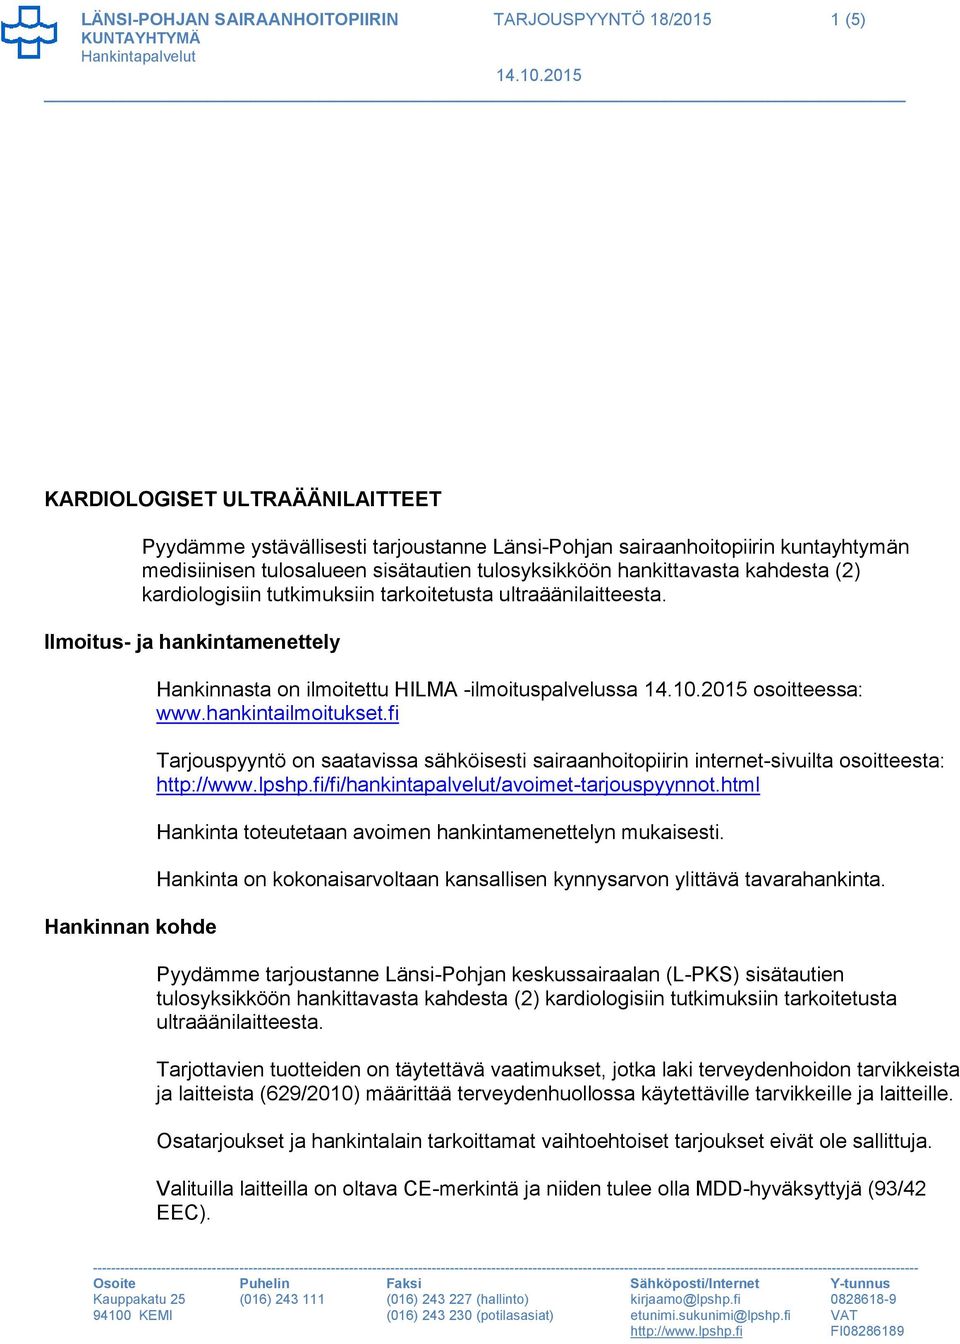 Ilmoitus- ja hankintamenettely Hankinnan kohde Hankinnasta on ilmoitettu HILMA -ilmoituspalvelussa osoitteessa: www.hankintailmoitukset.